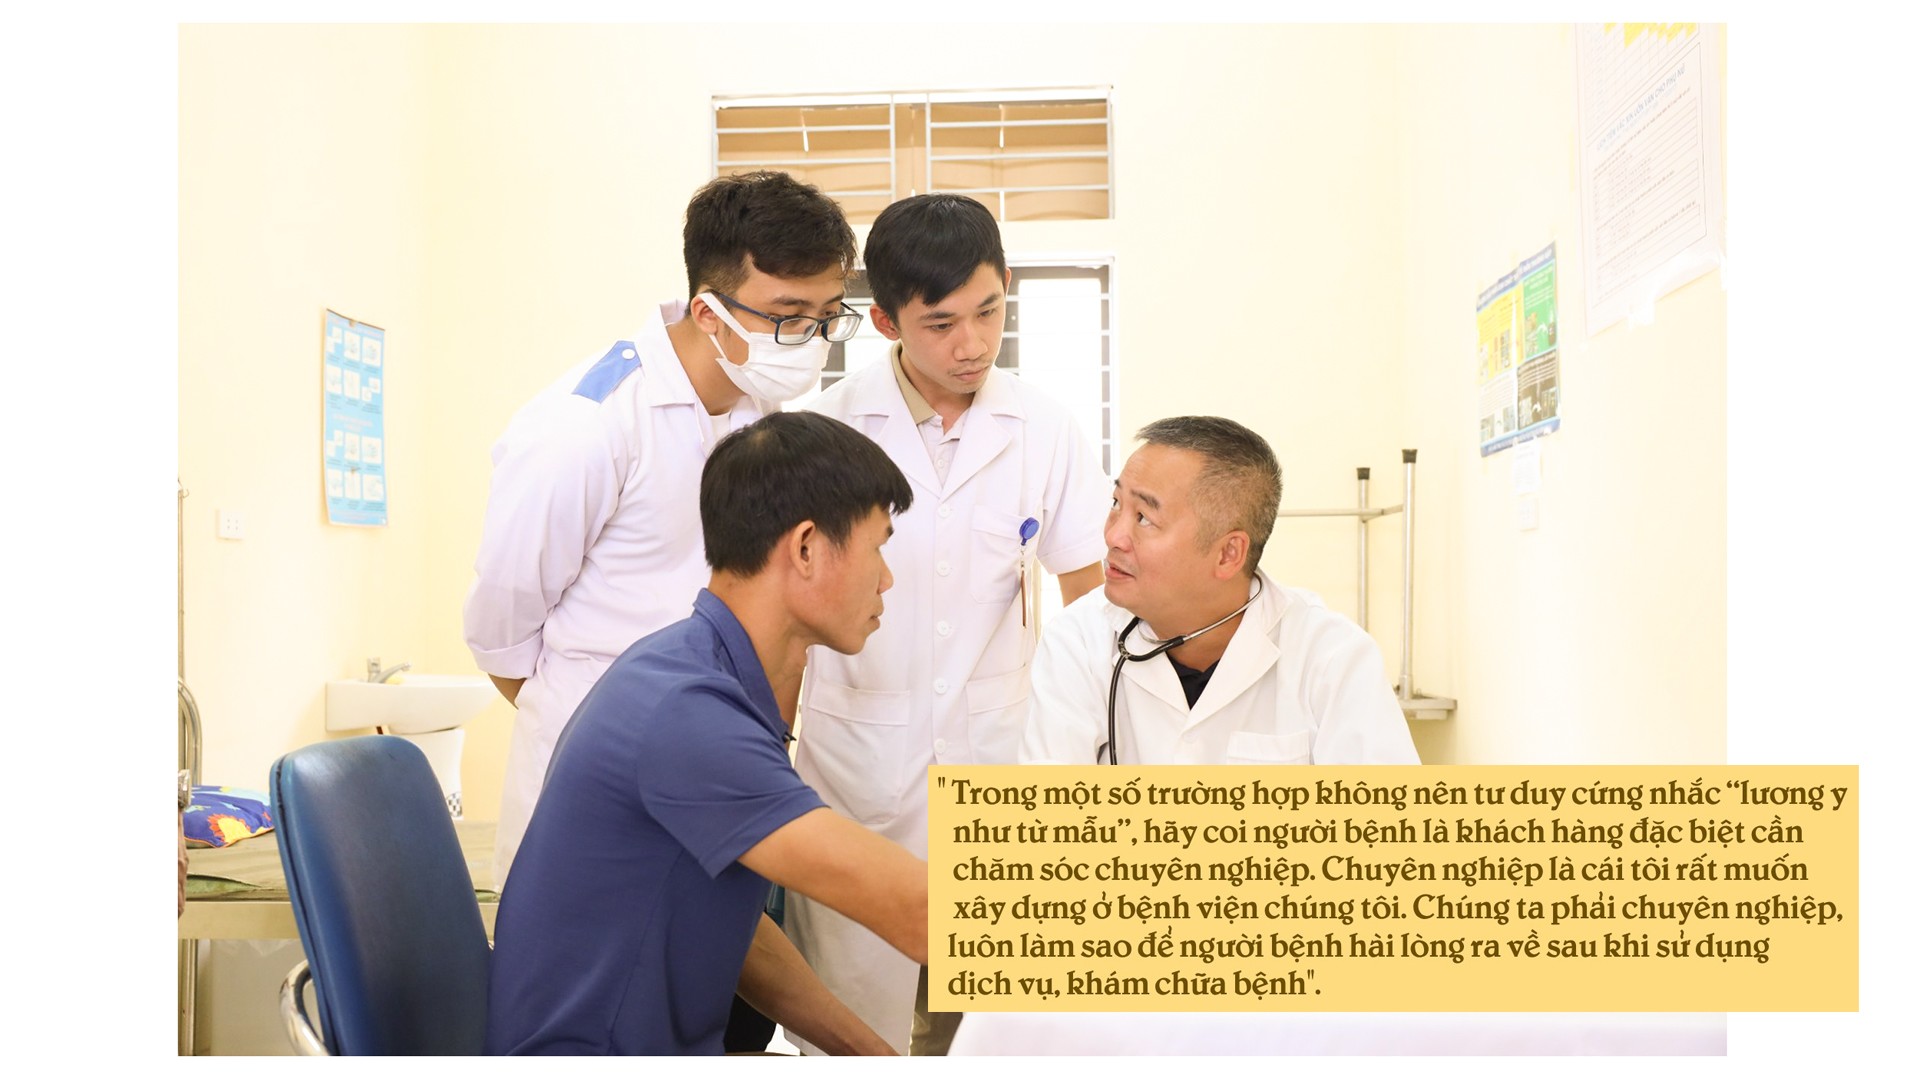 PGS.TS Nguyễn Lân Hiếu: “Chuyên nghiệp” là điều chúng tôi hướng tới, làm sao để bệnh nhân hài lòng khi ra về - 7